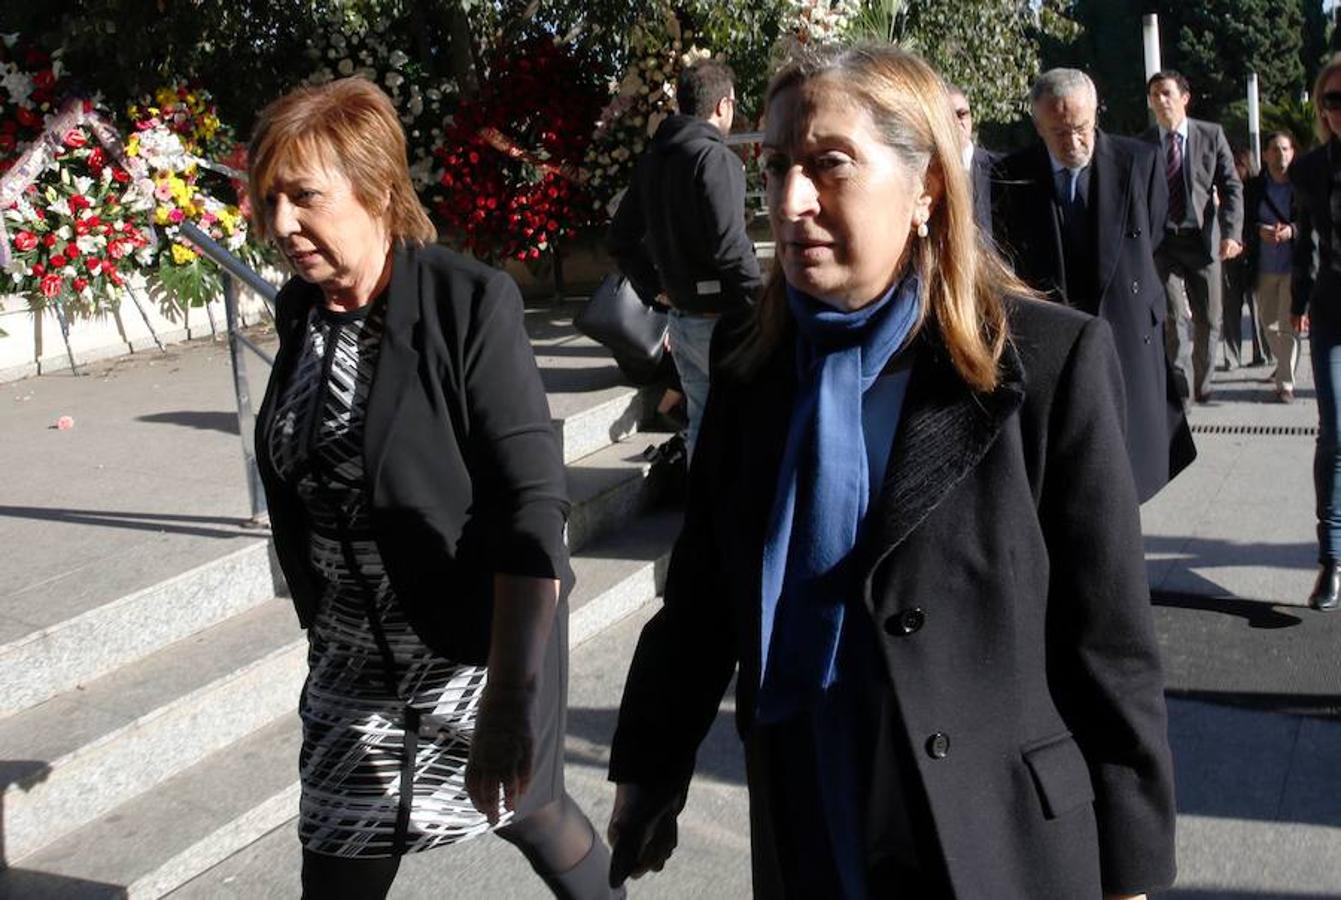 Celia Villalobos y Ana Pastor, presidenta del Congreso de los Diputados, llegan al tanatorio para dar el último adiós a Rita Barberá